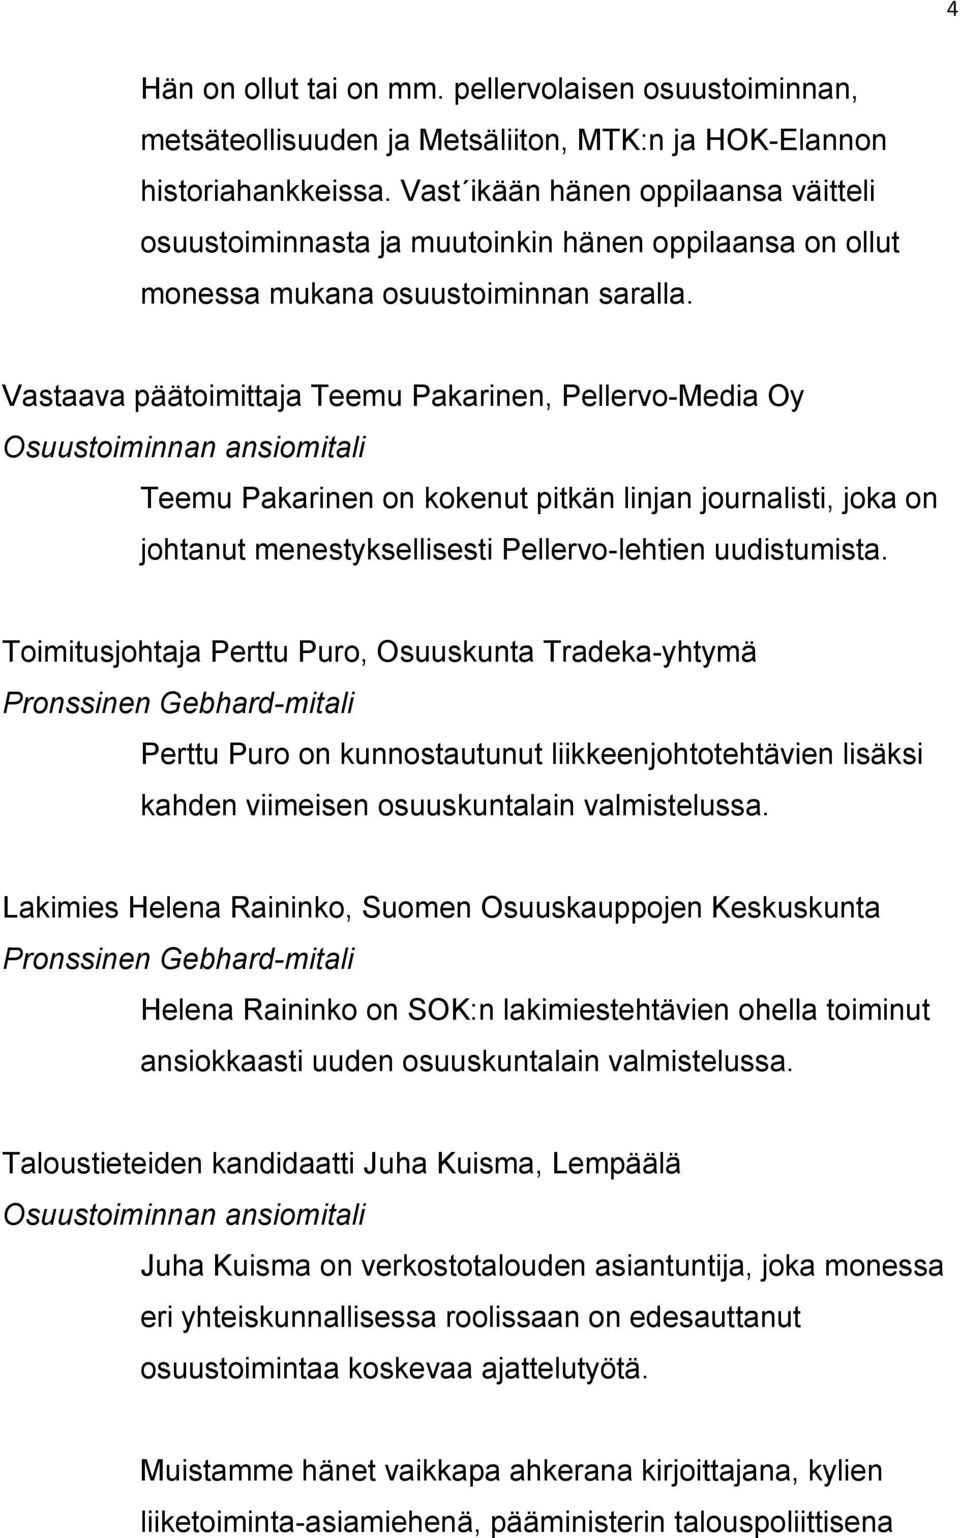 Vastaava päätoimittaja Teemu Pakarinen, Pellervo-Media Oy Teemu Pakarinen on kokenut pitkän linjan journalisti, joka on johtanut menestyksellisesti Pellervo-lehtien uudistumista.